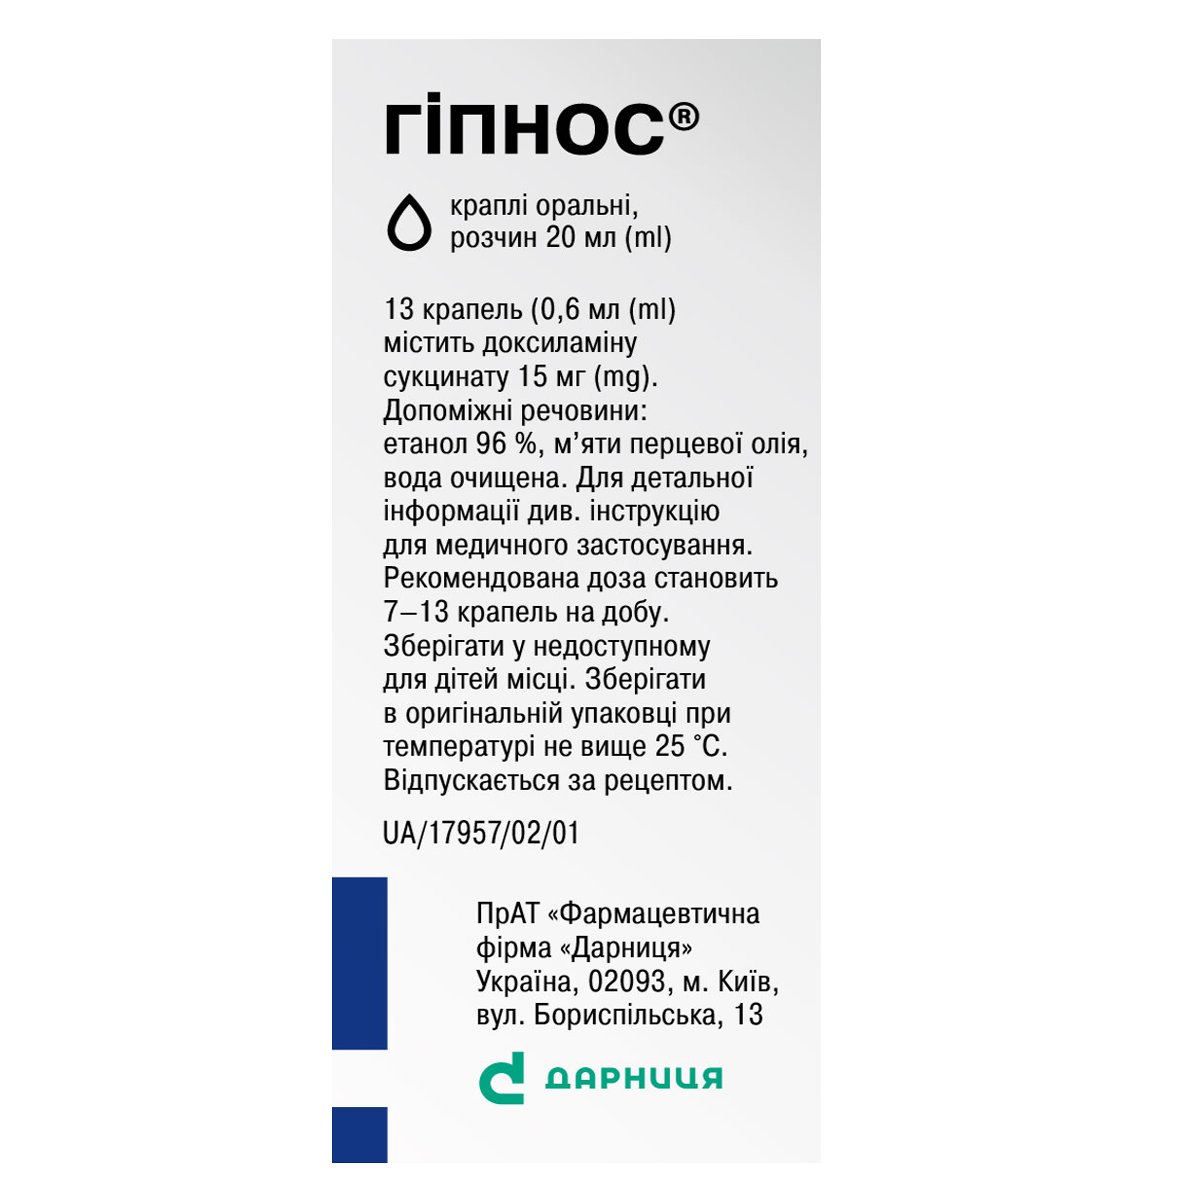 Гіпнос® (краплі) виробник фармацевтична компанія «Дарниця»